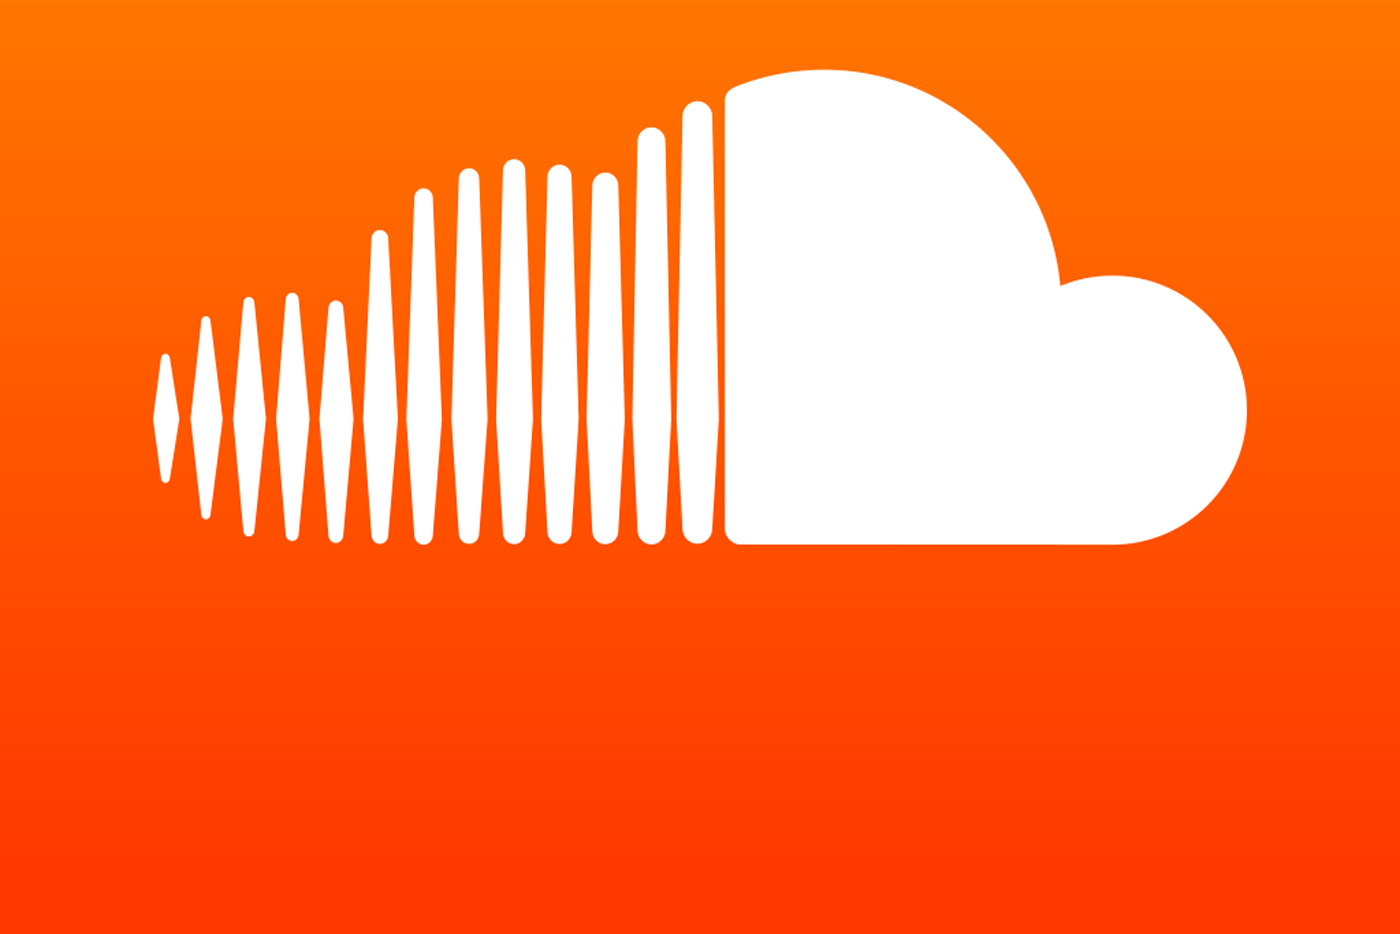 Soundcloud despide al 40% de sus trabajadores